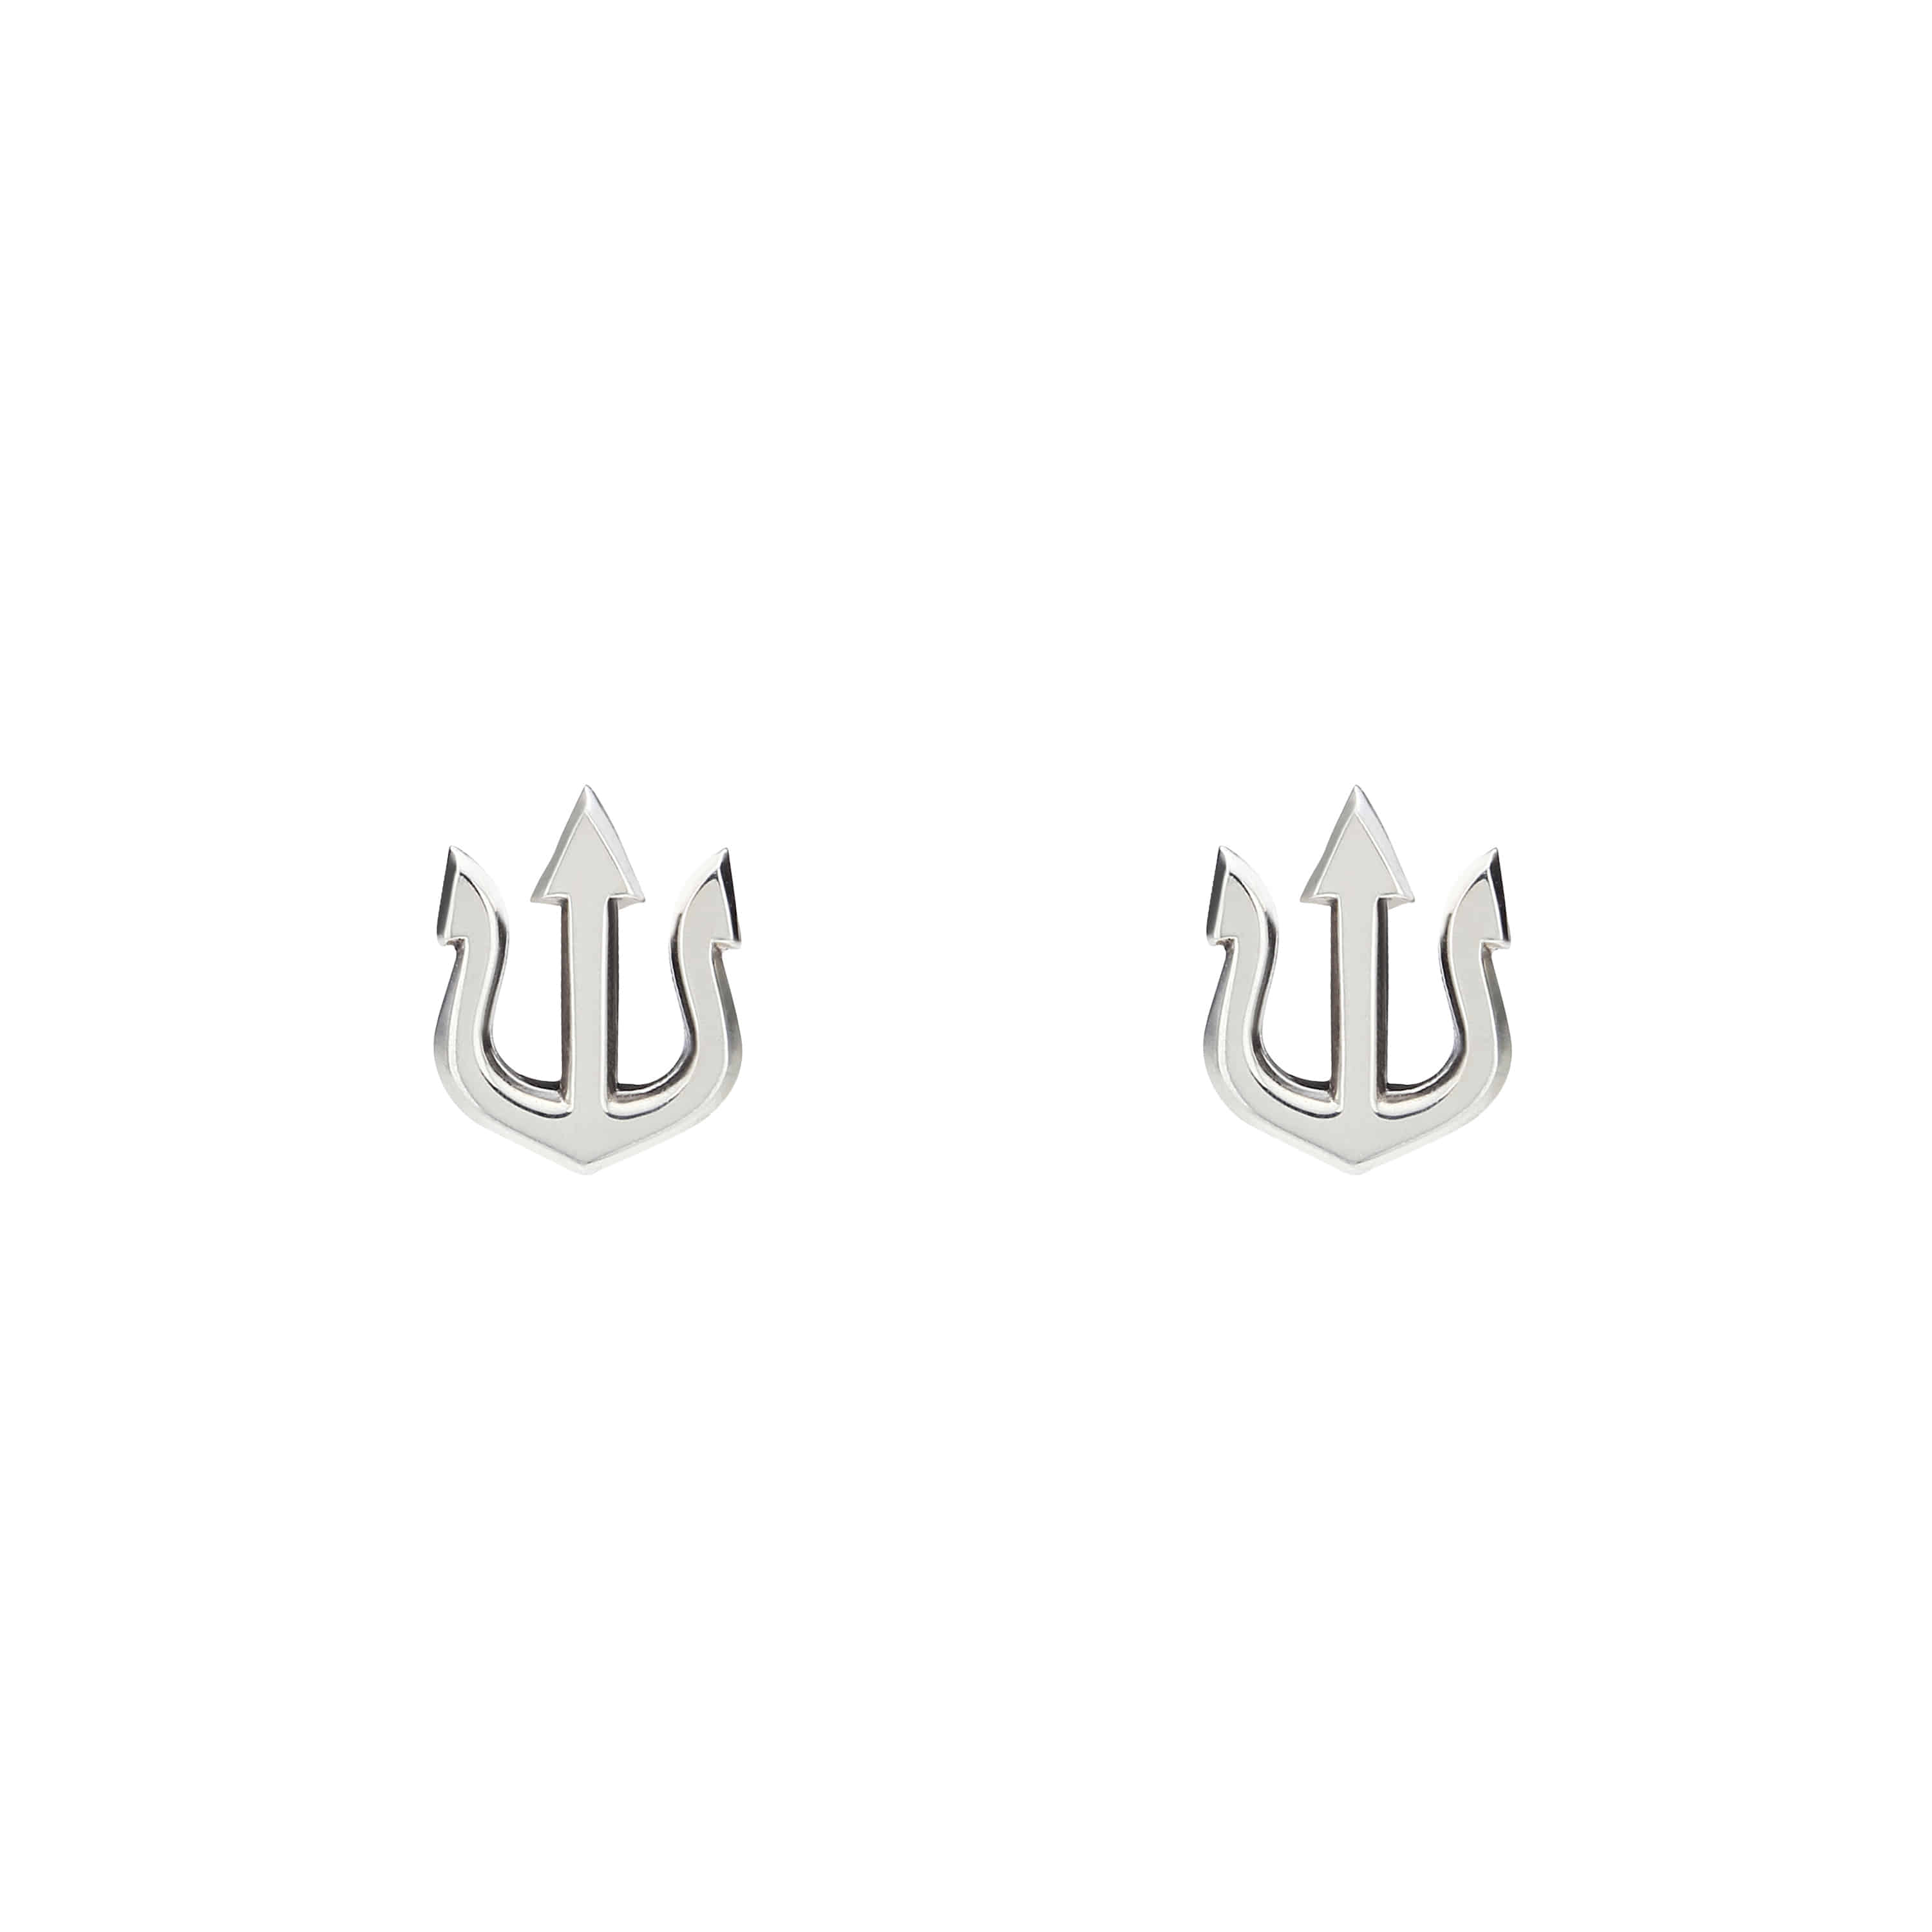 VAE002 : Minimal Trident Earring